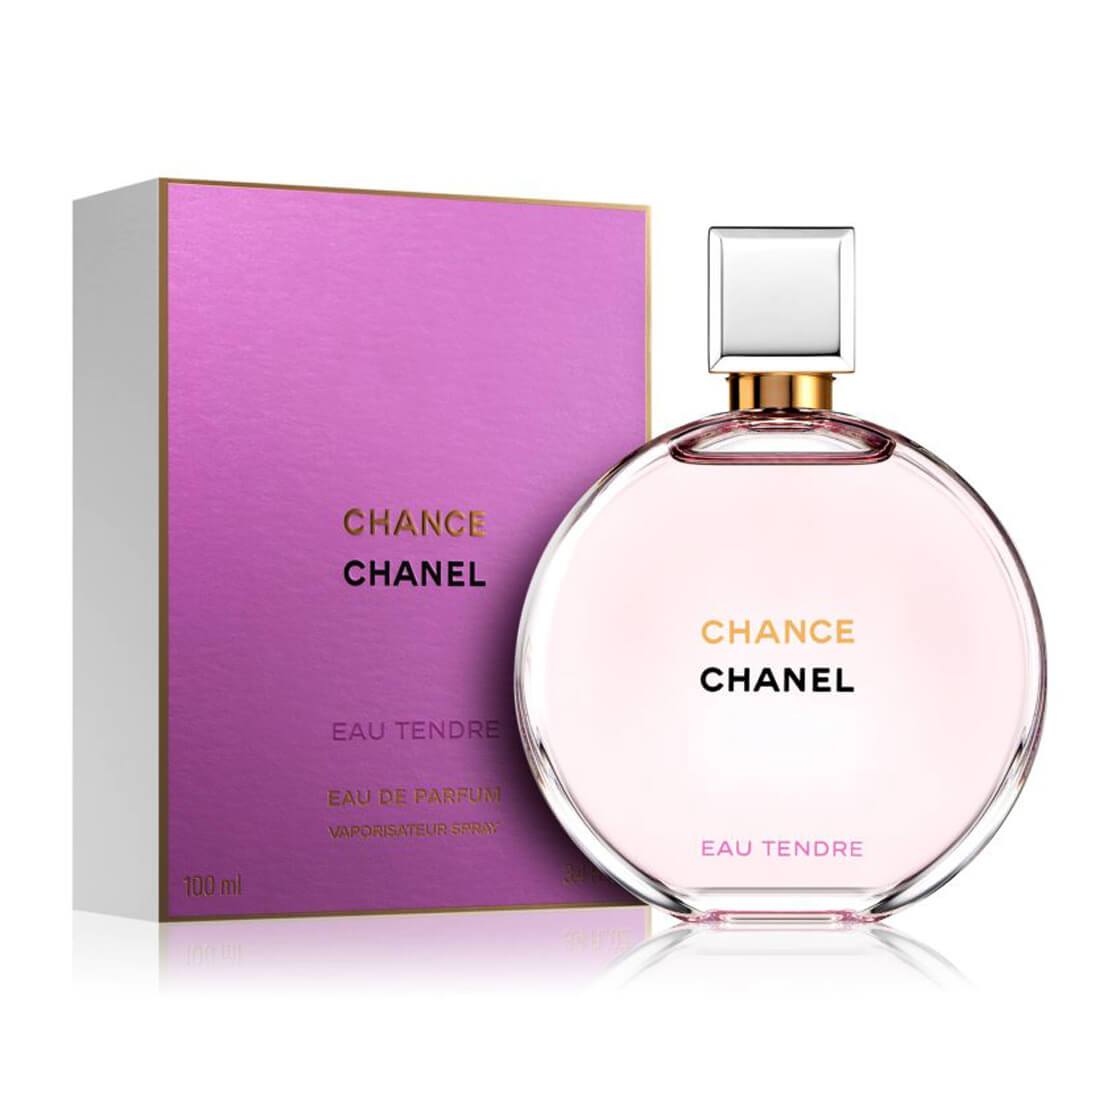 Chanel-Chance-Eau-Tendre-2018-EDP-apa-niche-chinh-hang